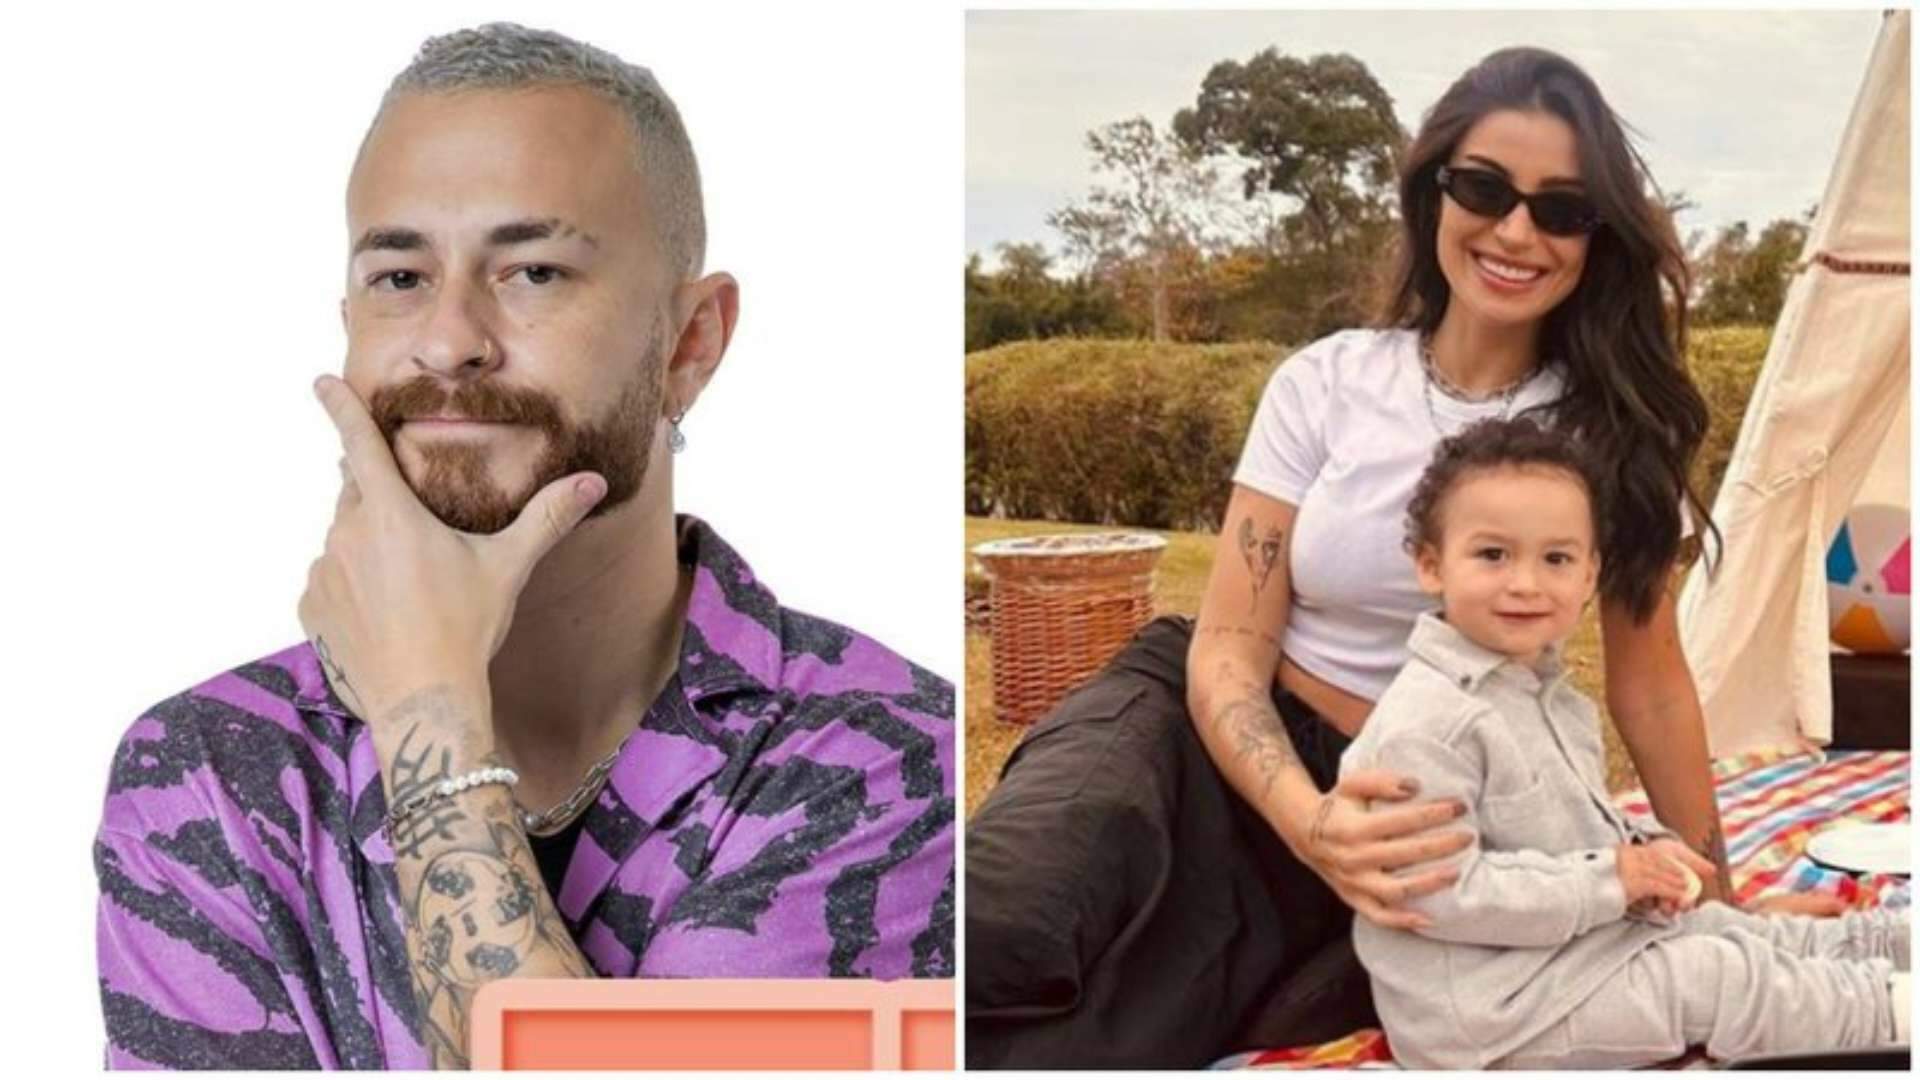 Fred faz revelação bombástica sobre como seria a relação do filho com namorado de Bianca Andrade: “Preocupado” - Metropolitana FM